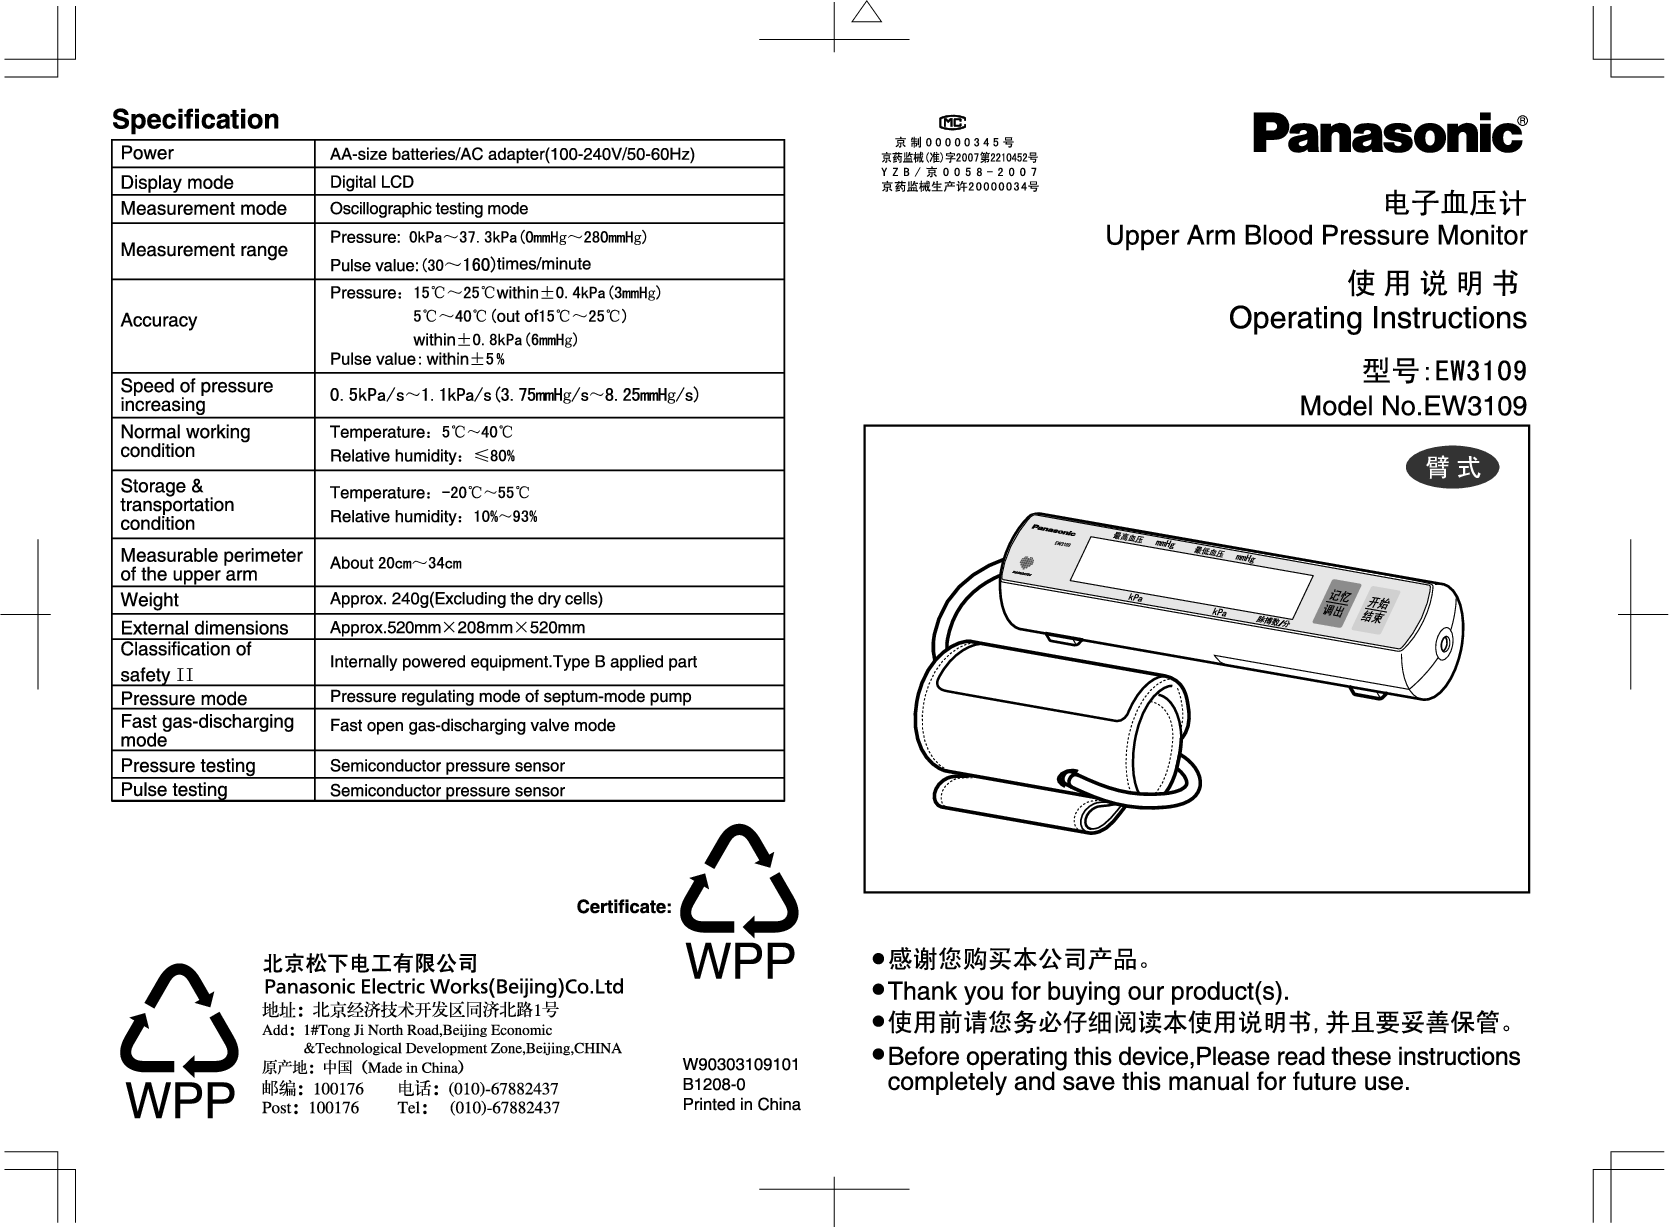 松下 Panasonic EW3109 说明书 封面